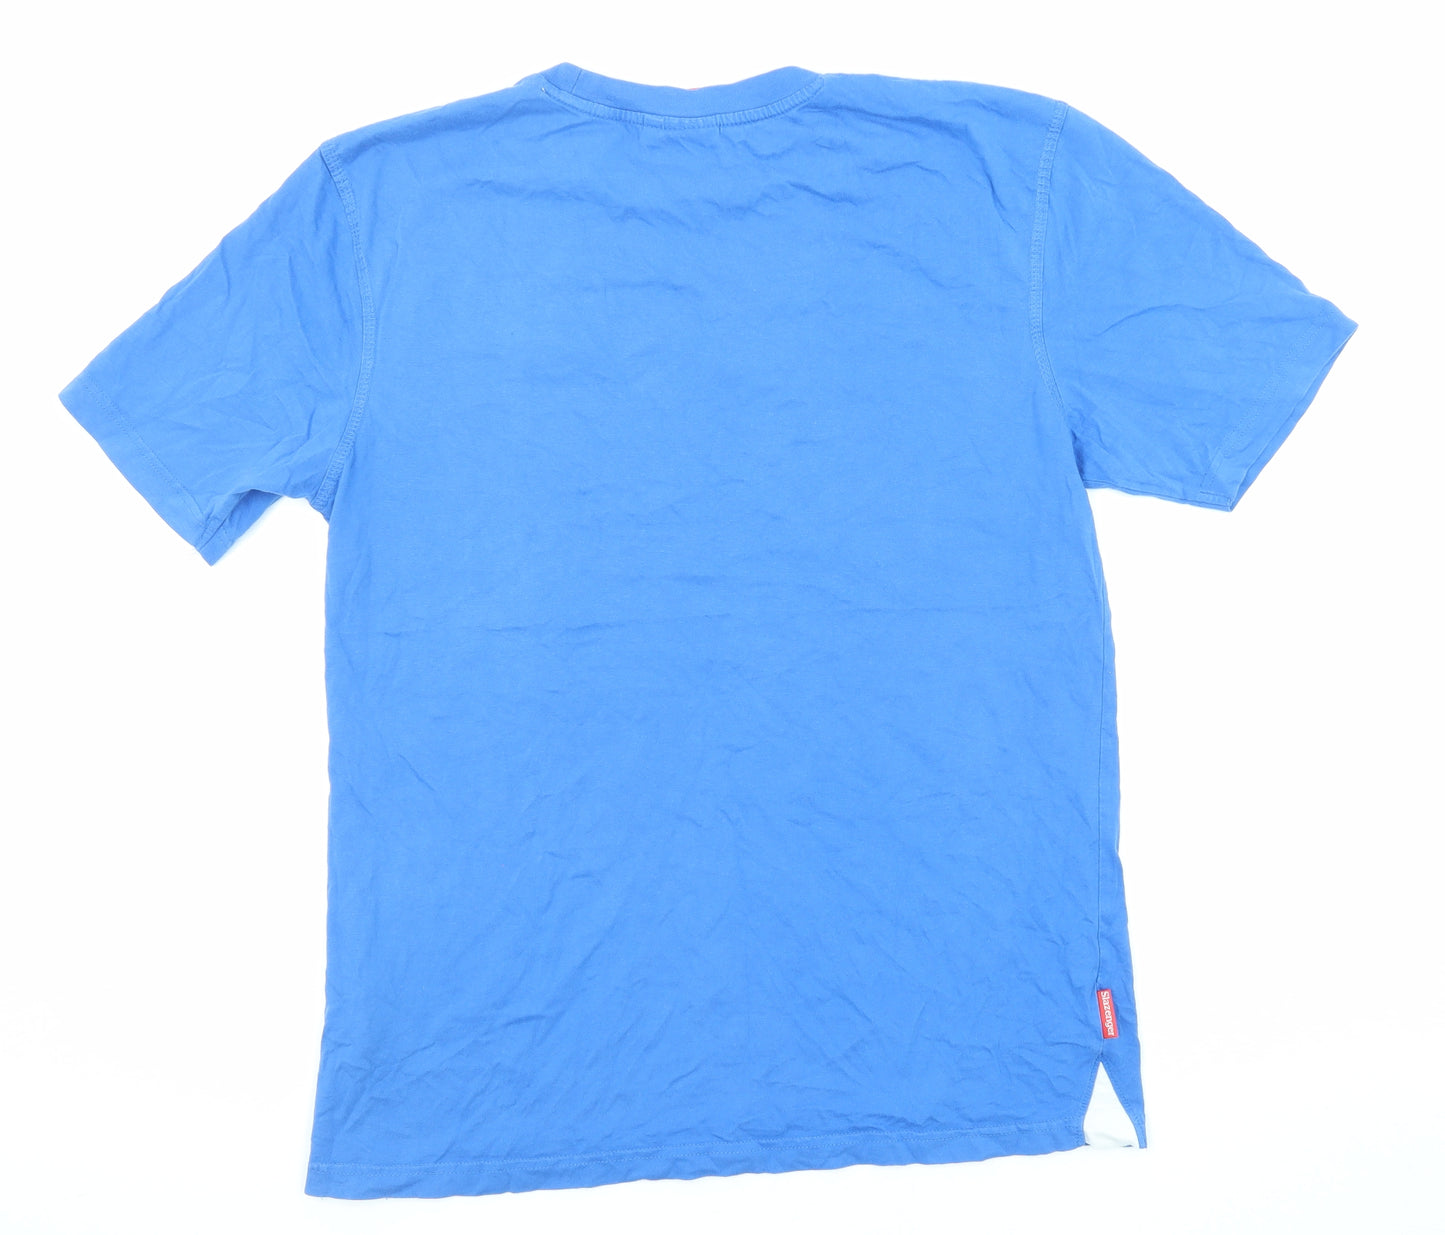 Slazenger Mens Blue Cotton T-Shirt Size M Crew Neck